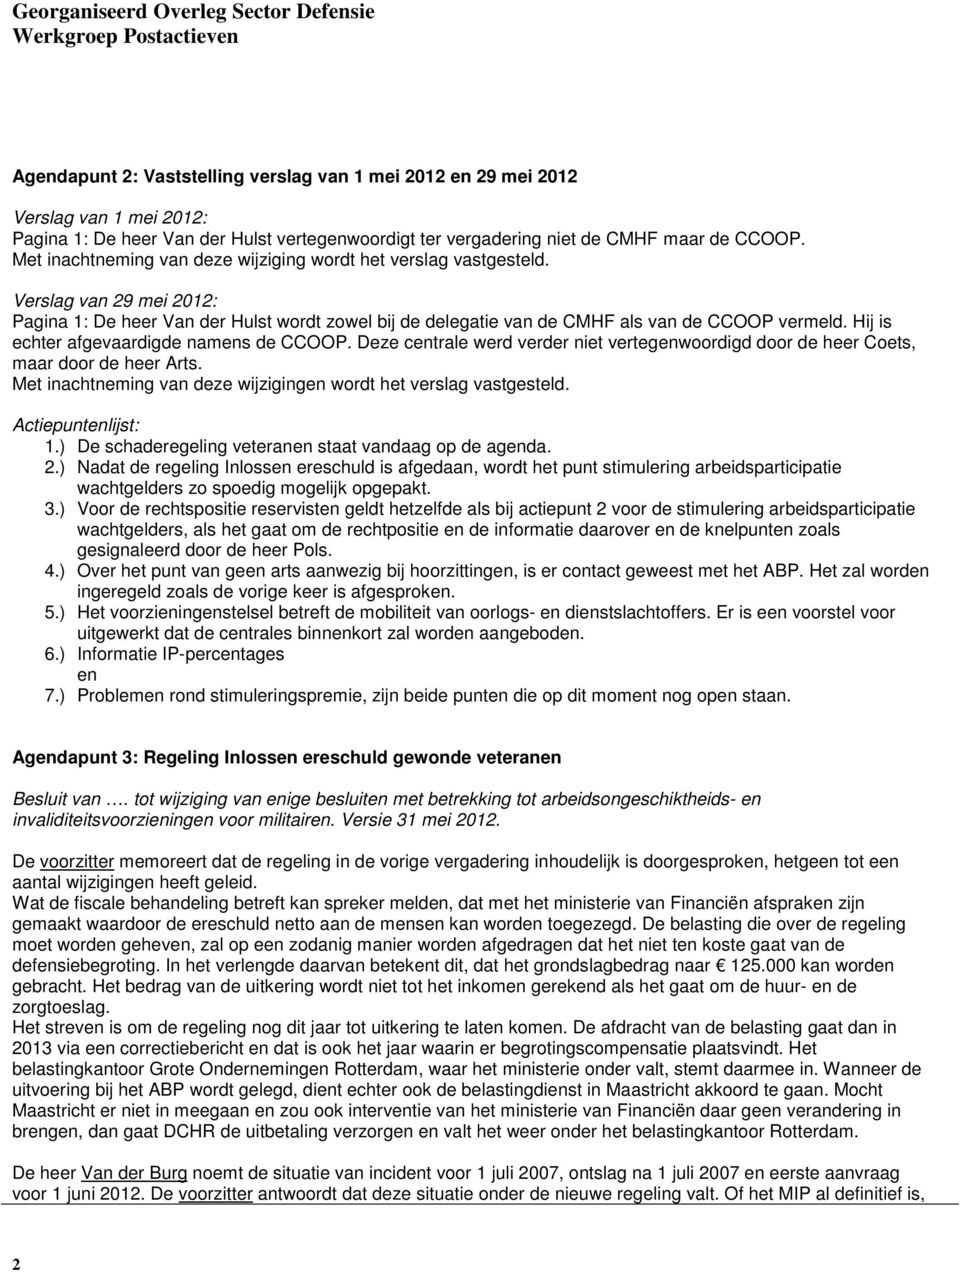 Verslag van 29 mei 2012: Pagina 1: De heer Van der Hulst wordt zowel bij de delegatie van de CMHF als van de CCOOP vermeld. Hij is echter afgevaardigde namens de CCOOP.